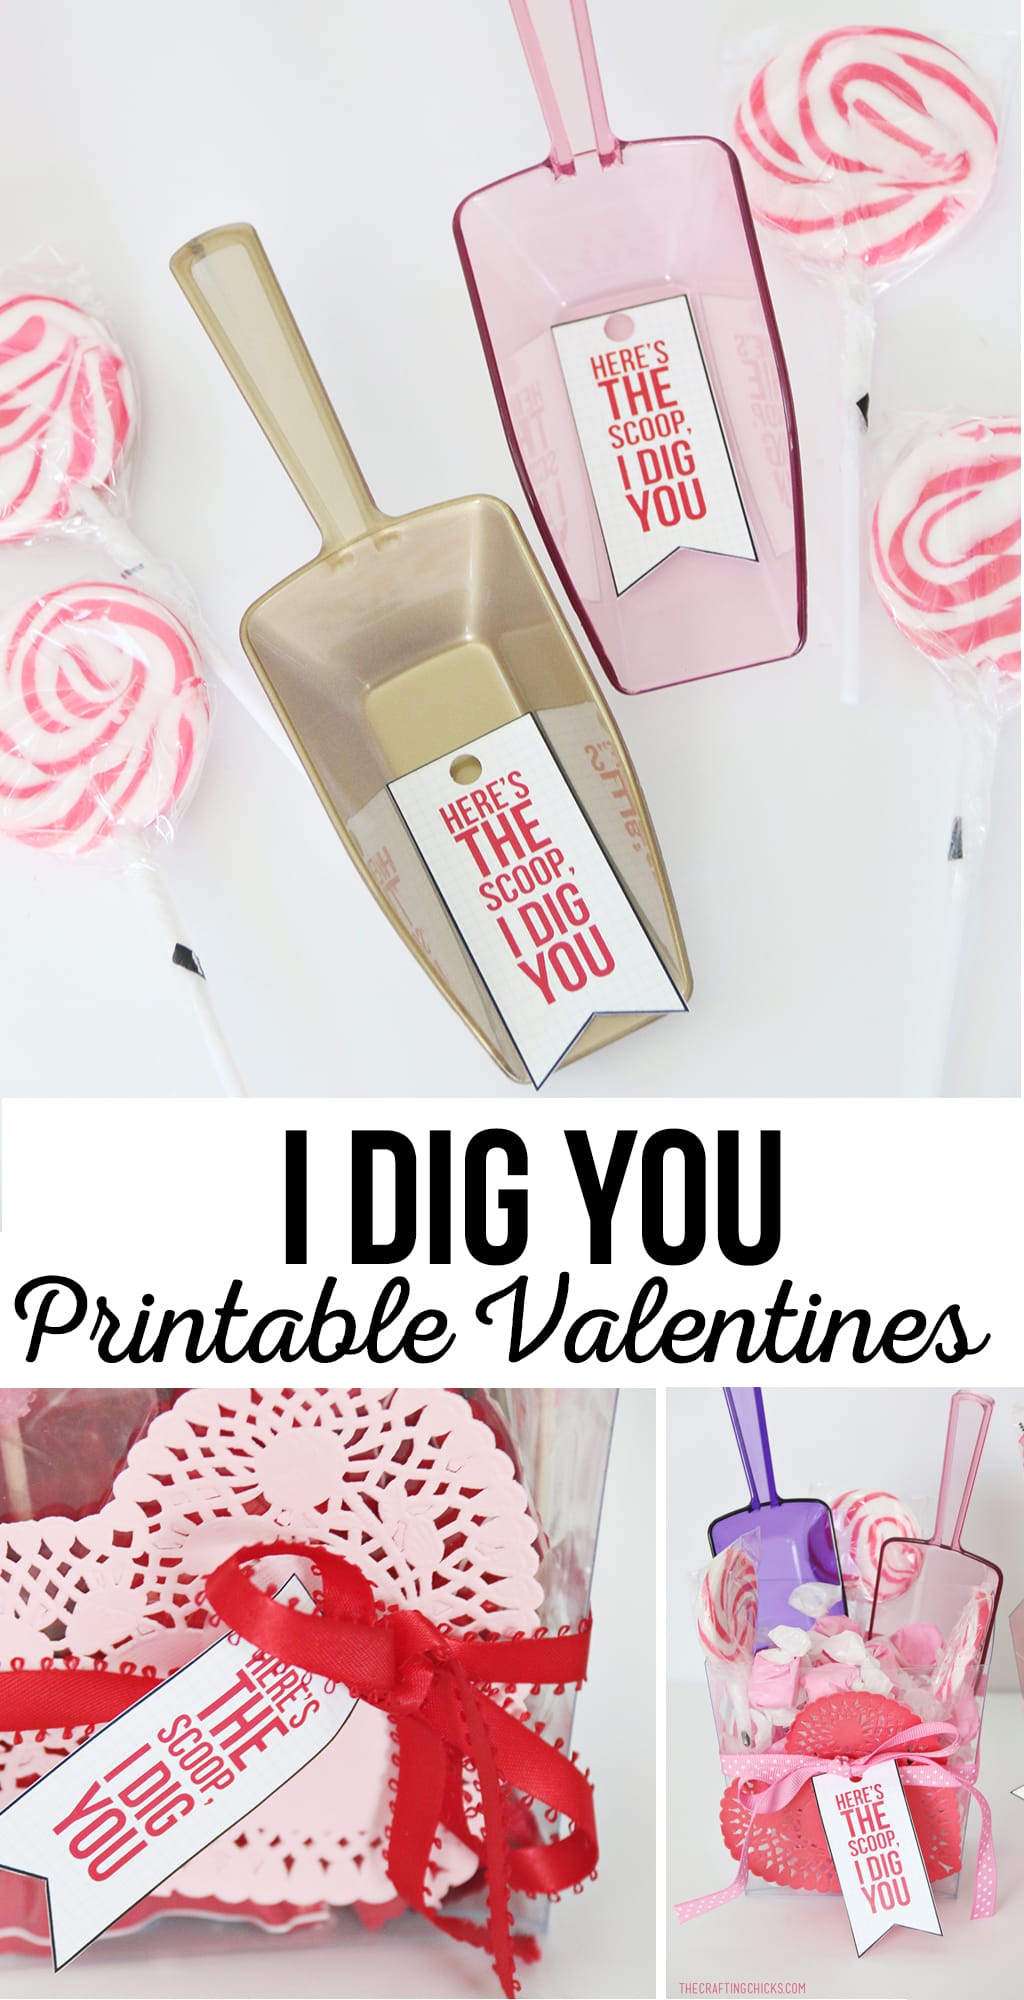 I Dig you Printable Valentine